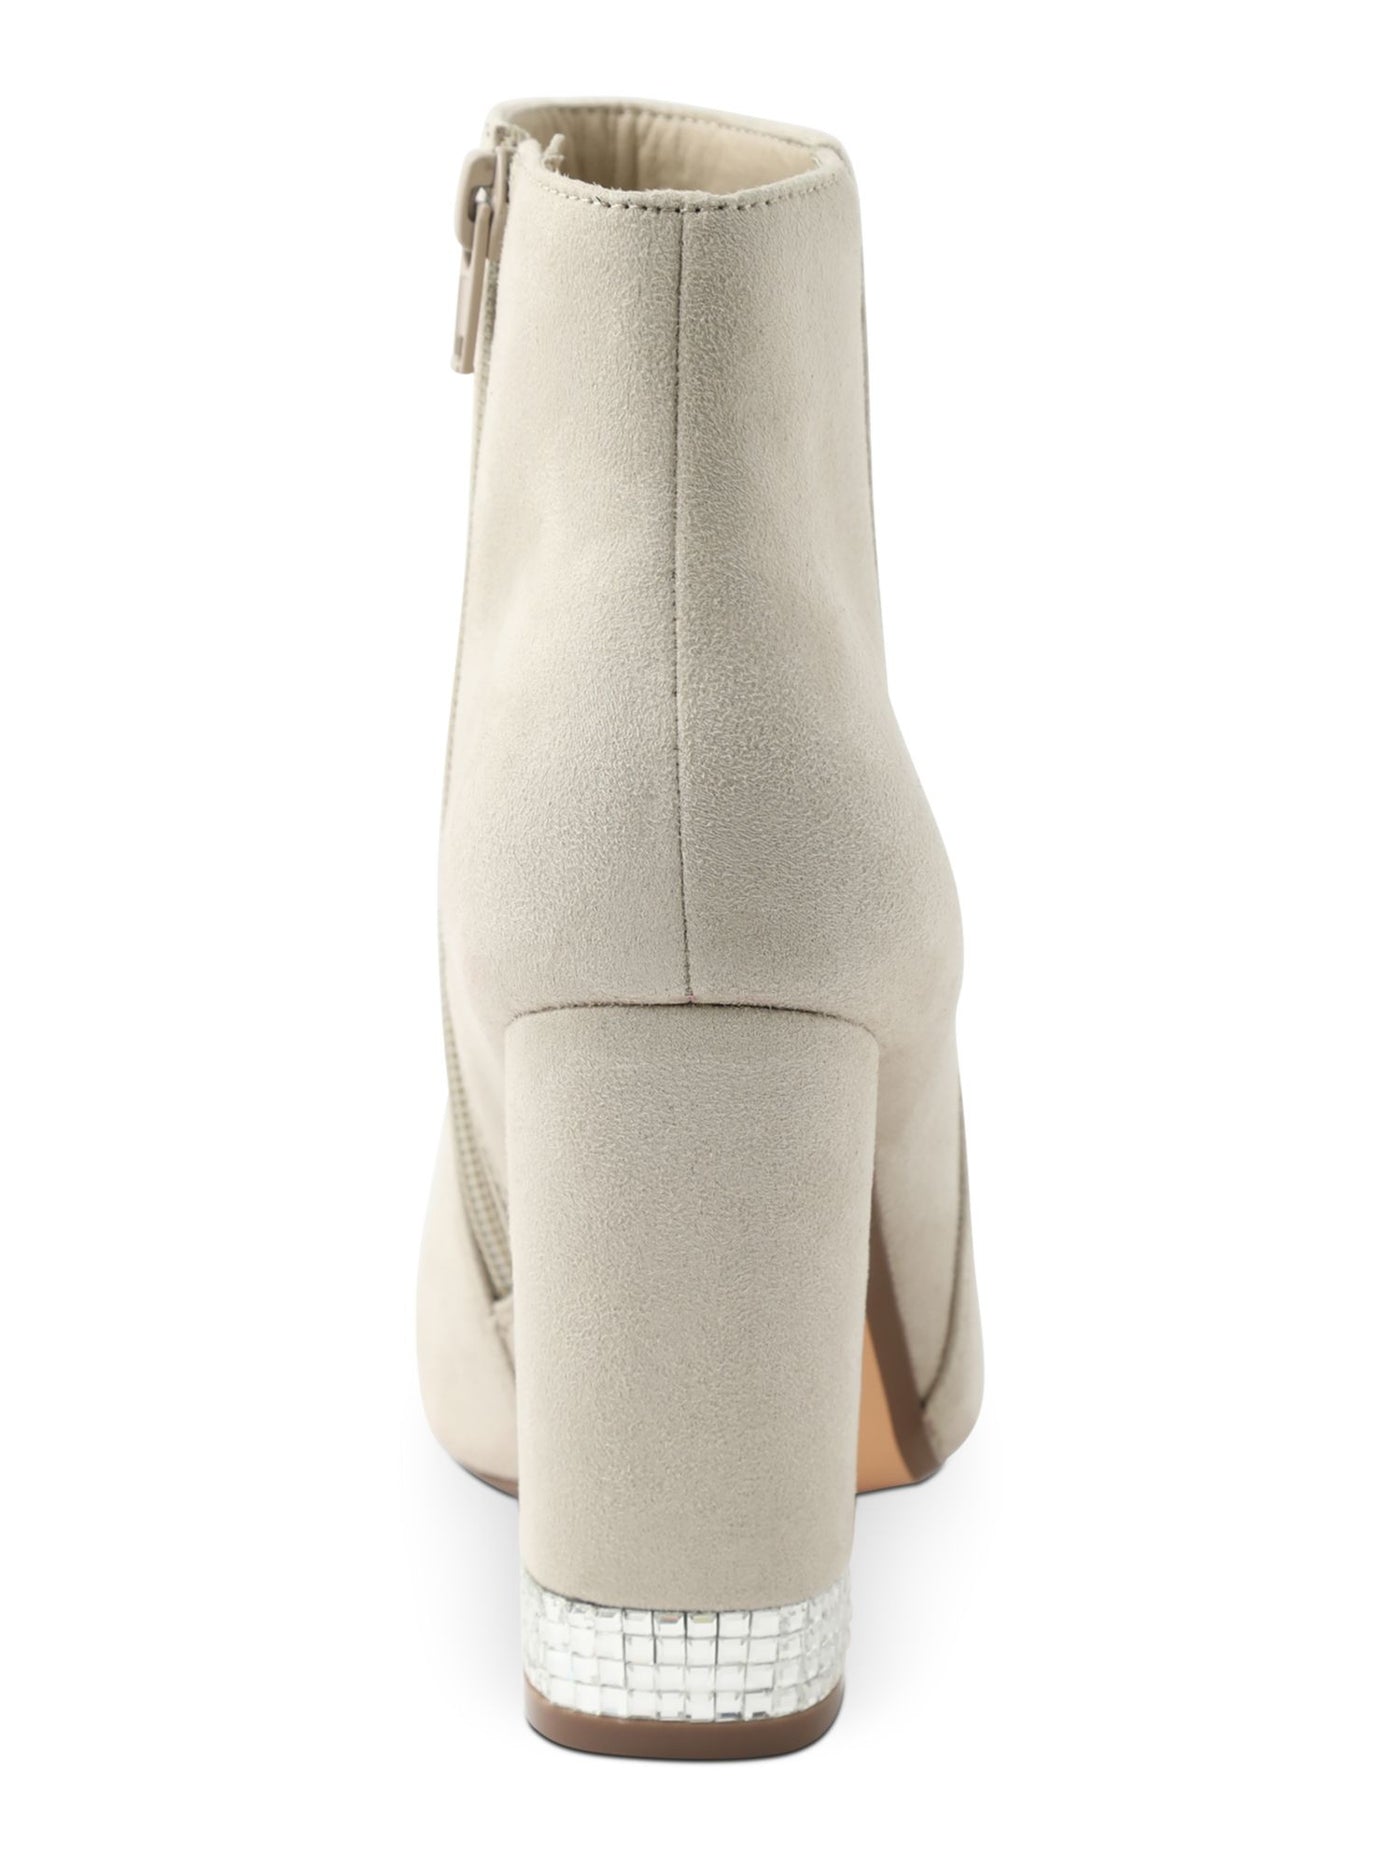 XOXO Womens Beige Comfort Rhinestone Yardria Round Toe Block Heel Zip-Up Boots Shoes 10 M